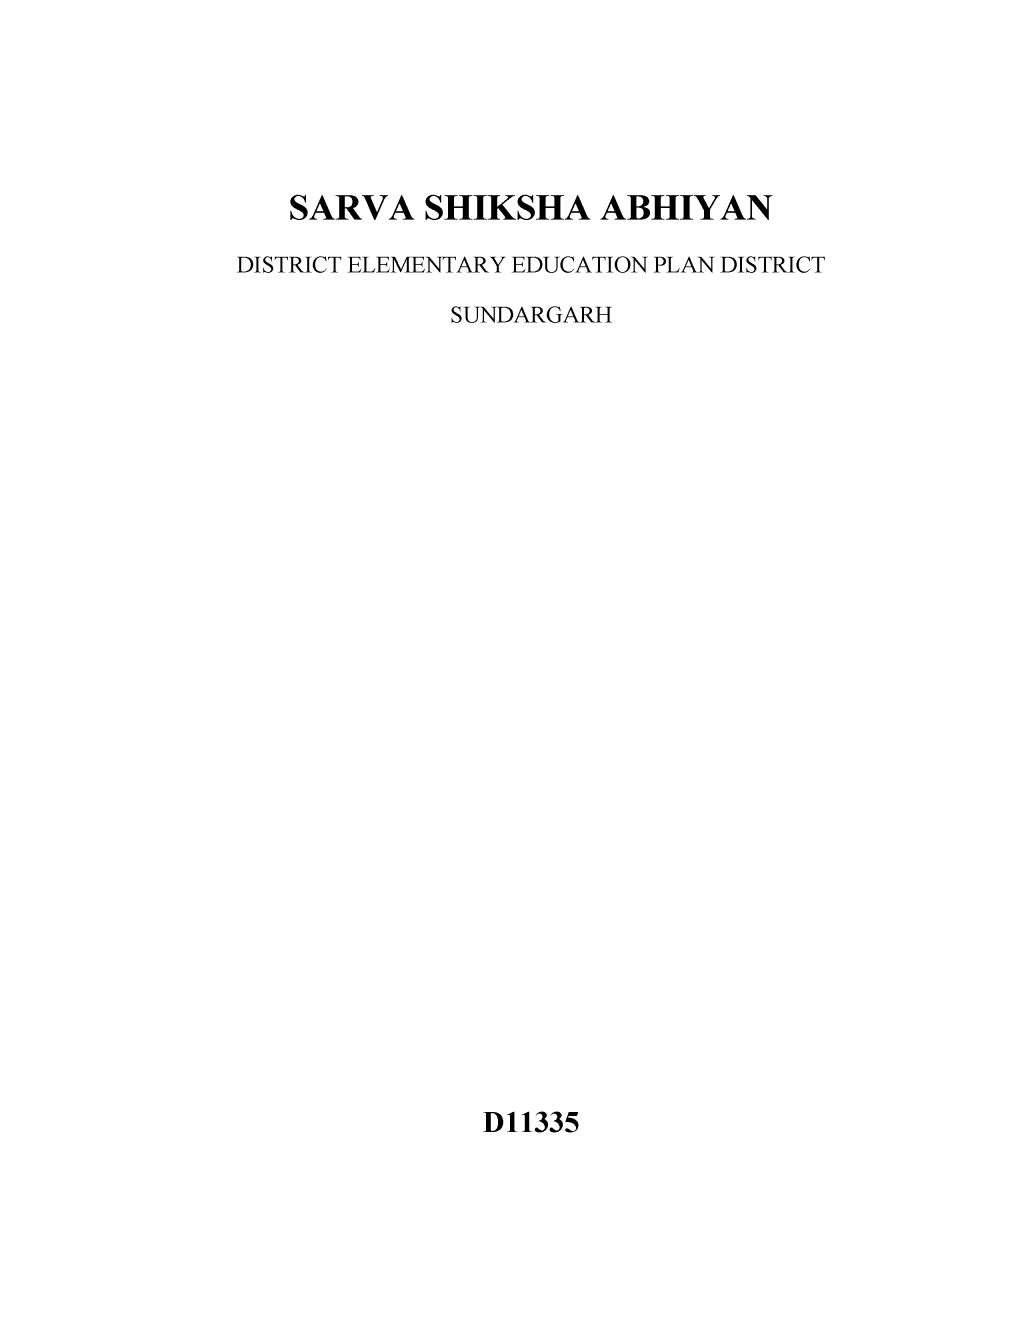 Sarva Shiksha Abhiyan